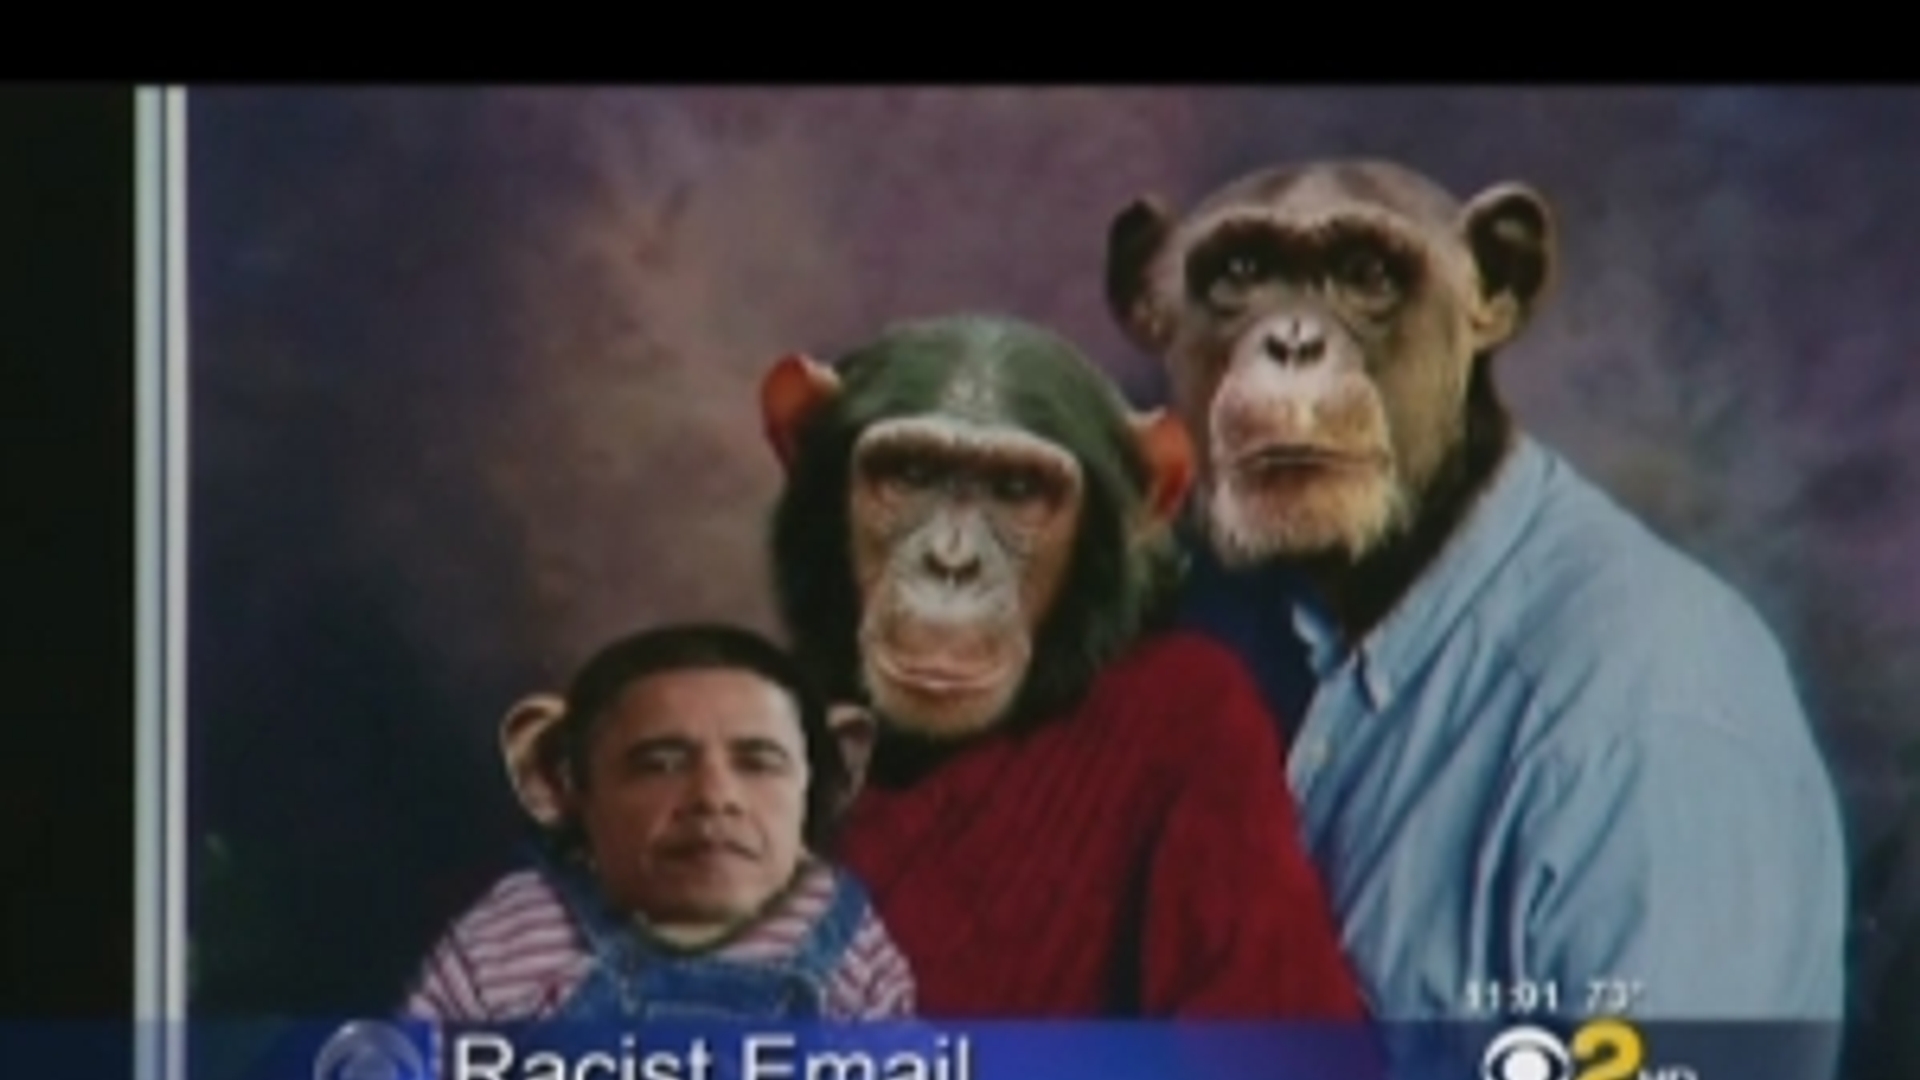 Obama_chimp